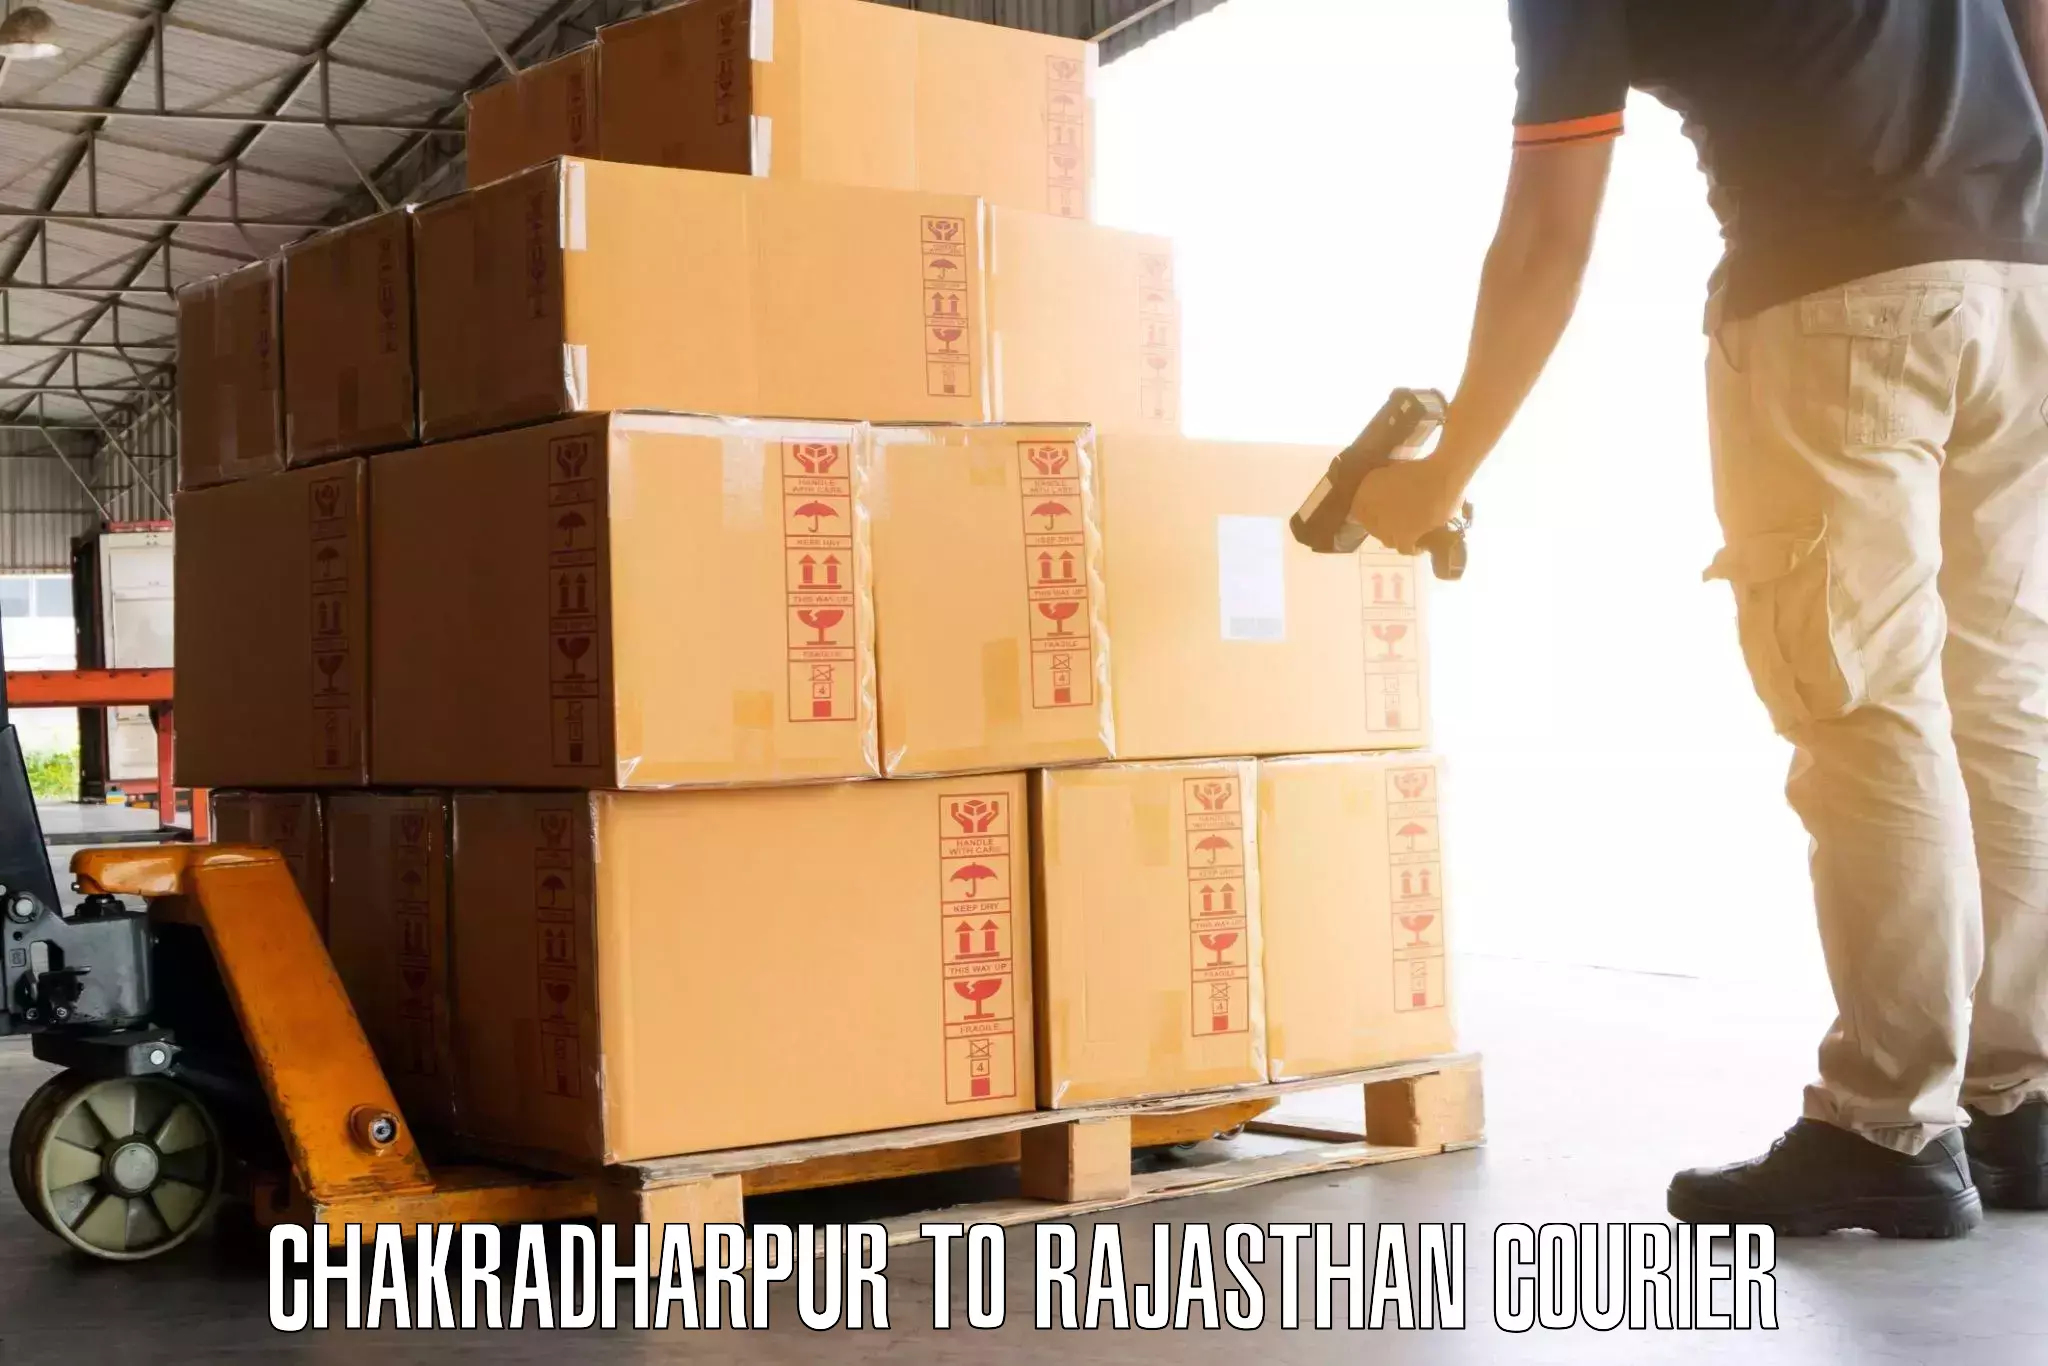 Doorstep luggage pickup Chakradharpur to Ras Pali